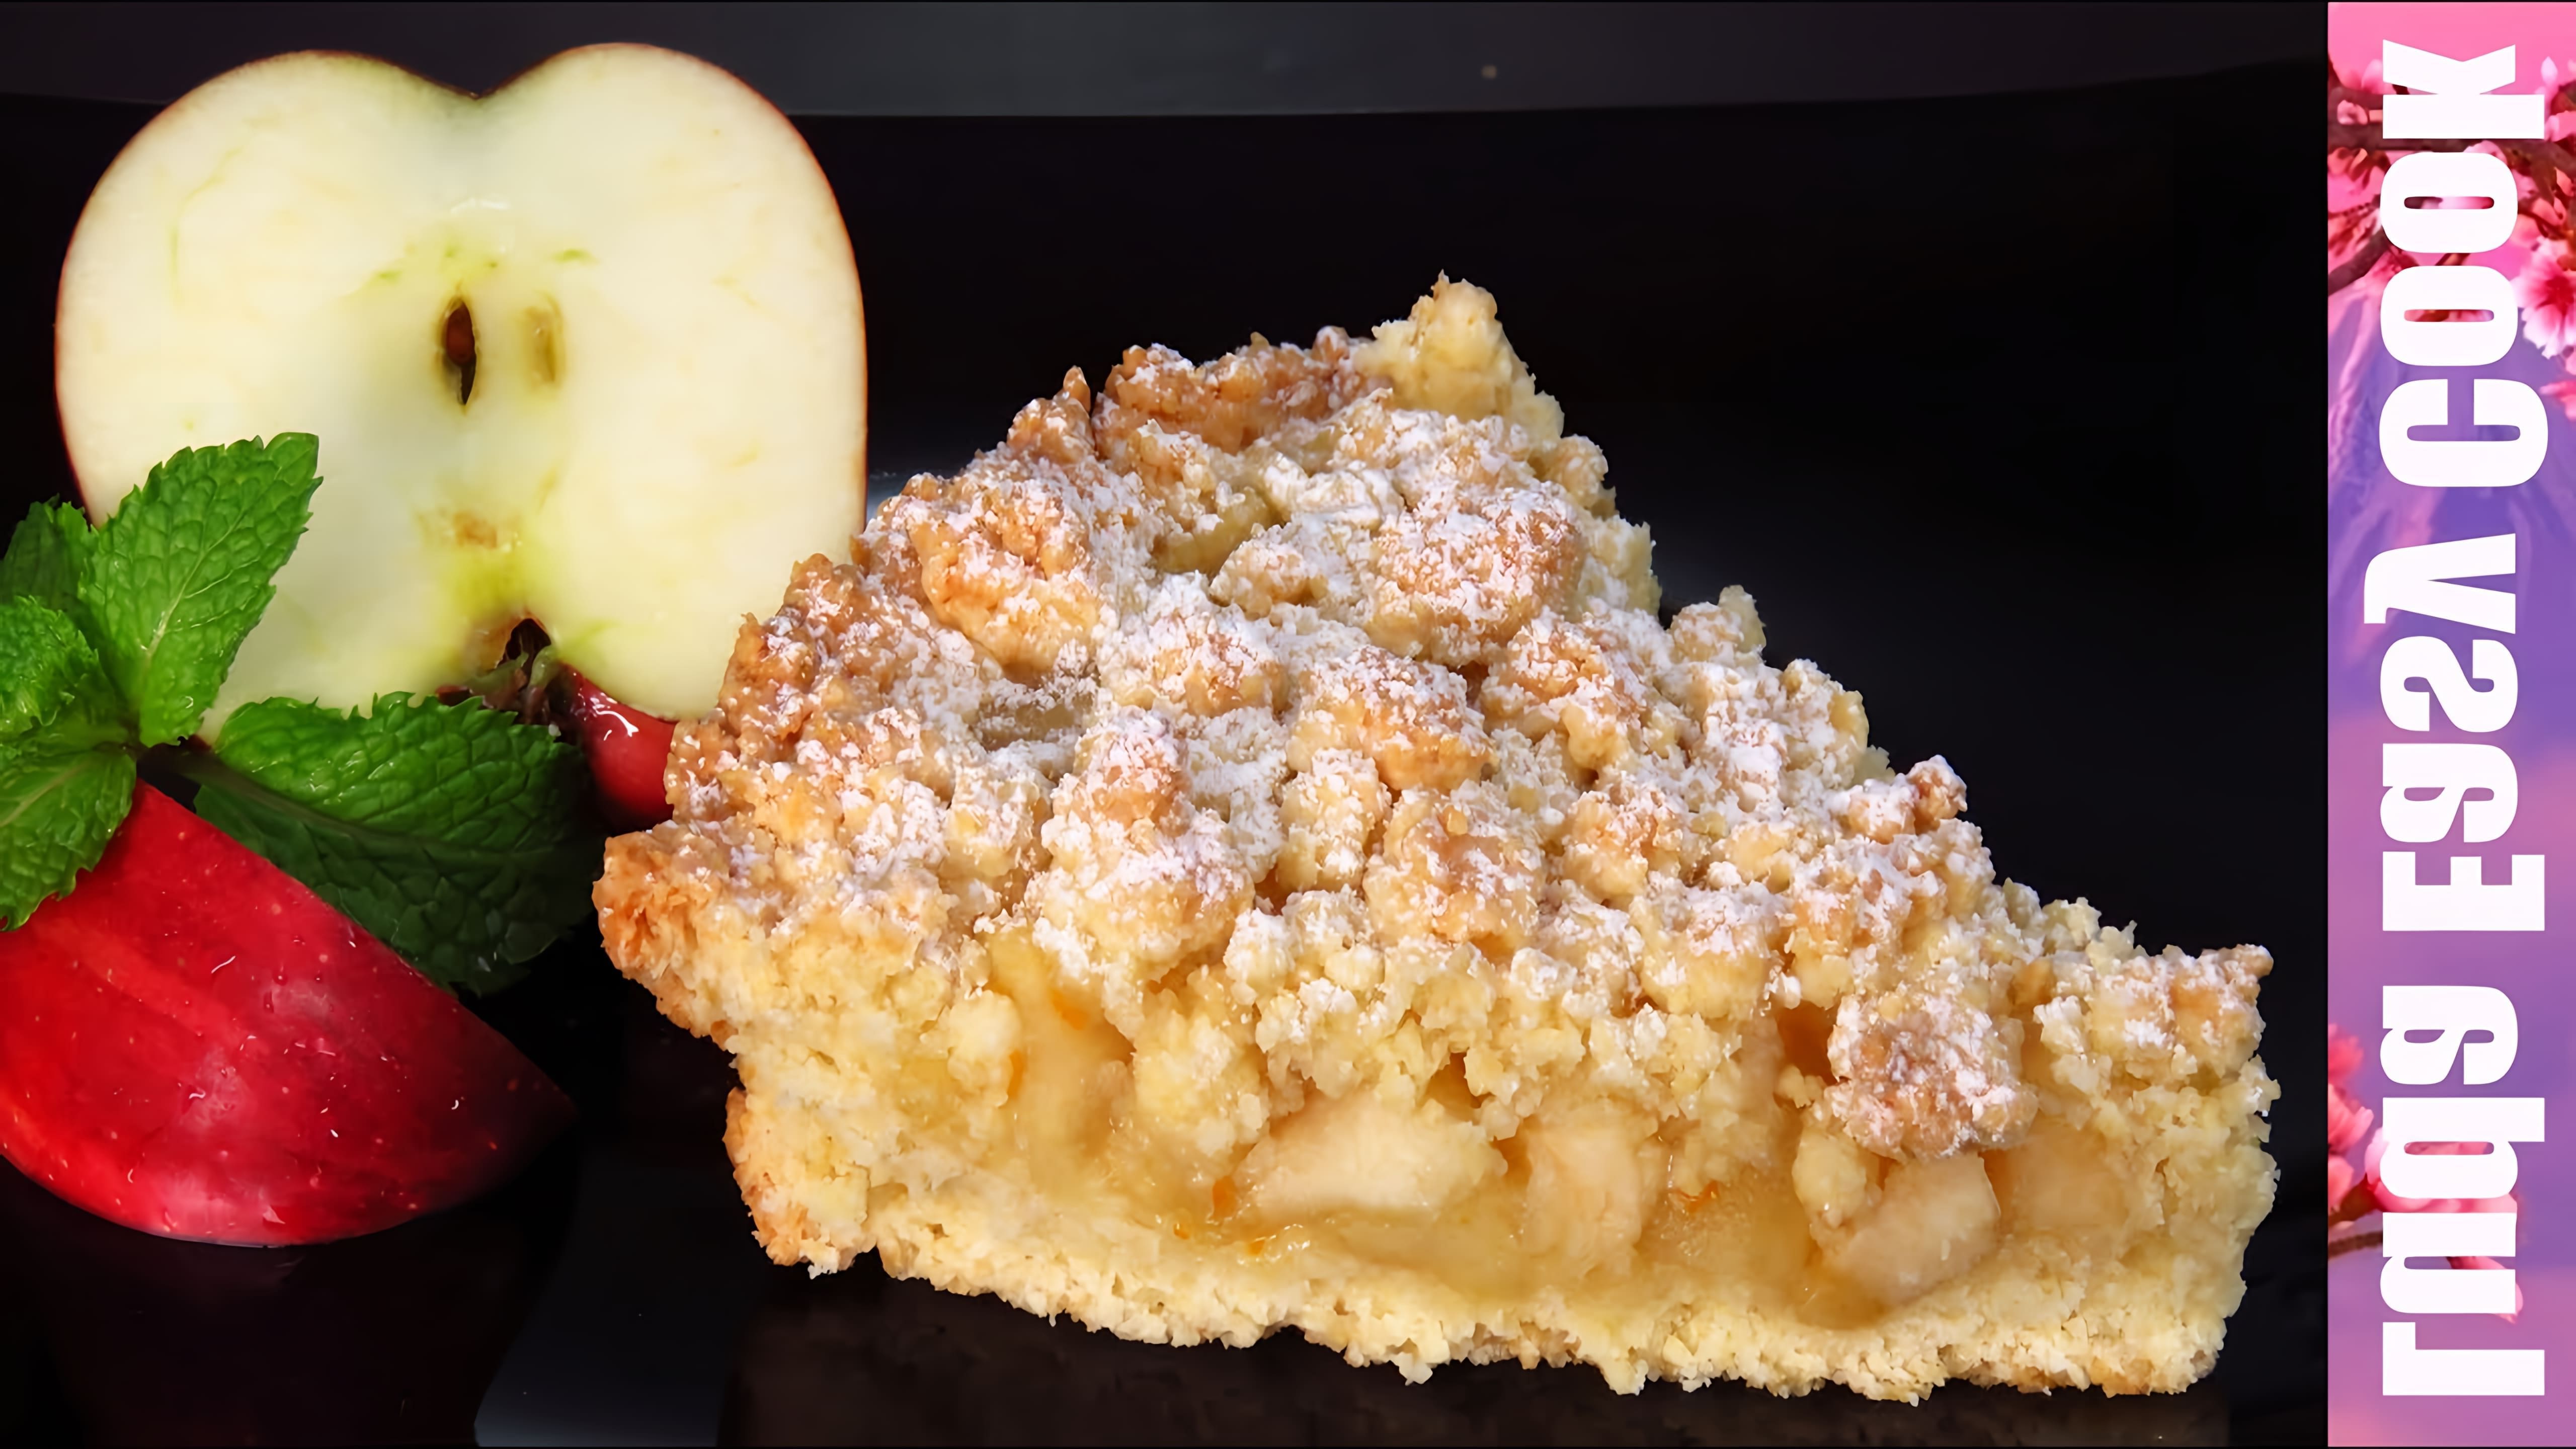 В этом видео демонстрируется рецепт приготовления песочного яблочного пирога